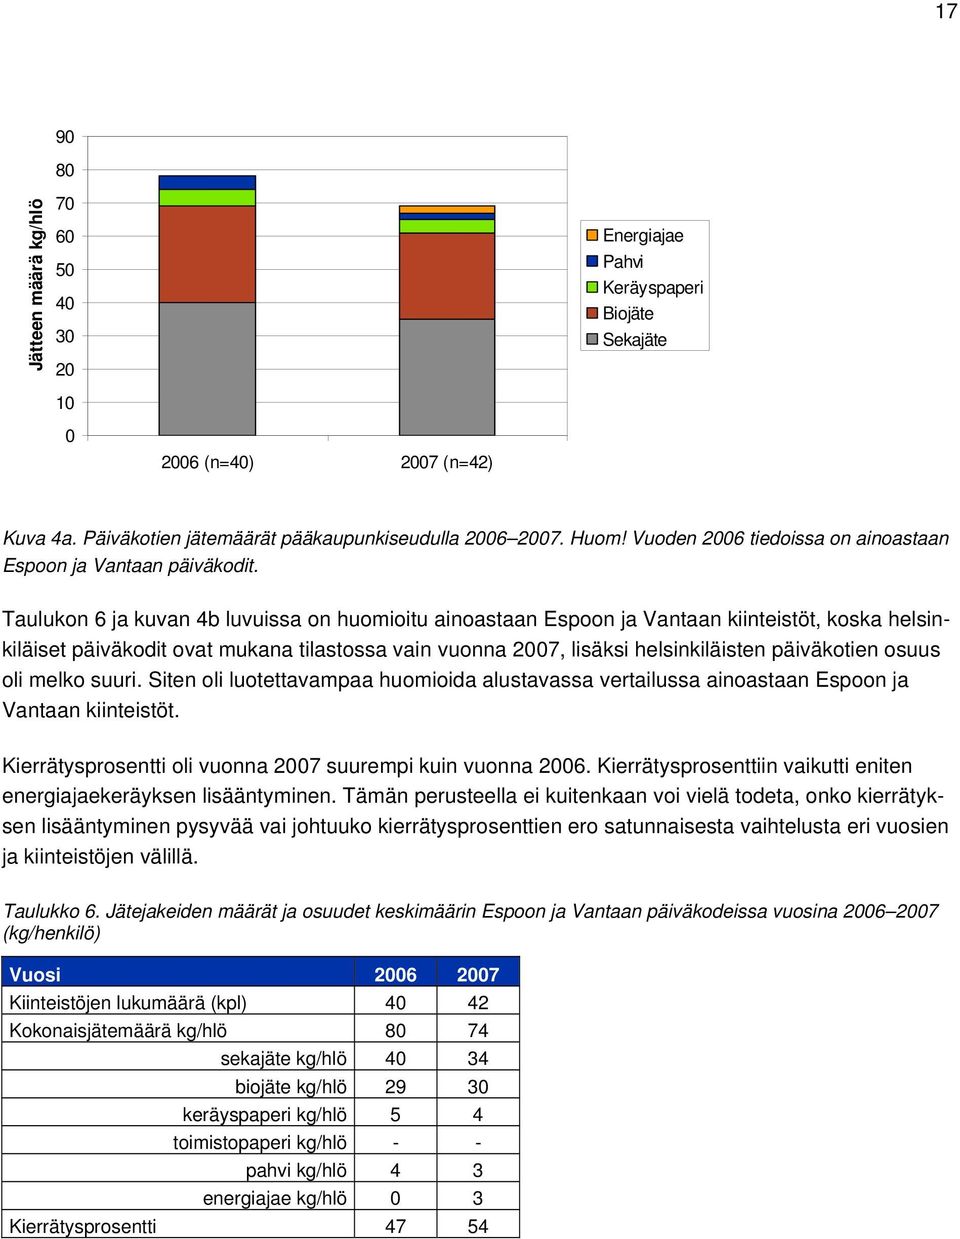 Taulukon 6 ja kuvan 4b luvuissa on huomioitu ainoastaan Espoon ja Vantaan kiinteistöt, koska helsinkiläiset päiväkodit ovat mukana tilastossa vain vuonna 2007, lisäksi helsinkiläisten päiväkotien